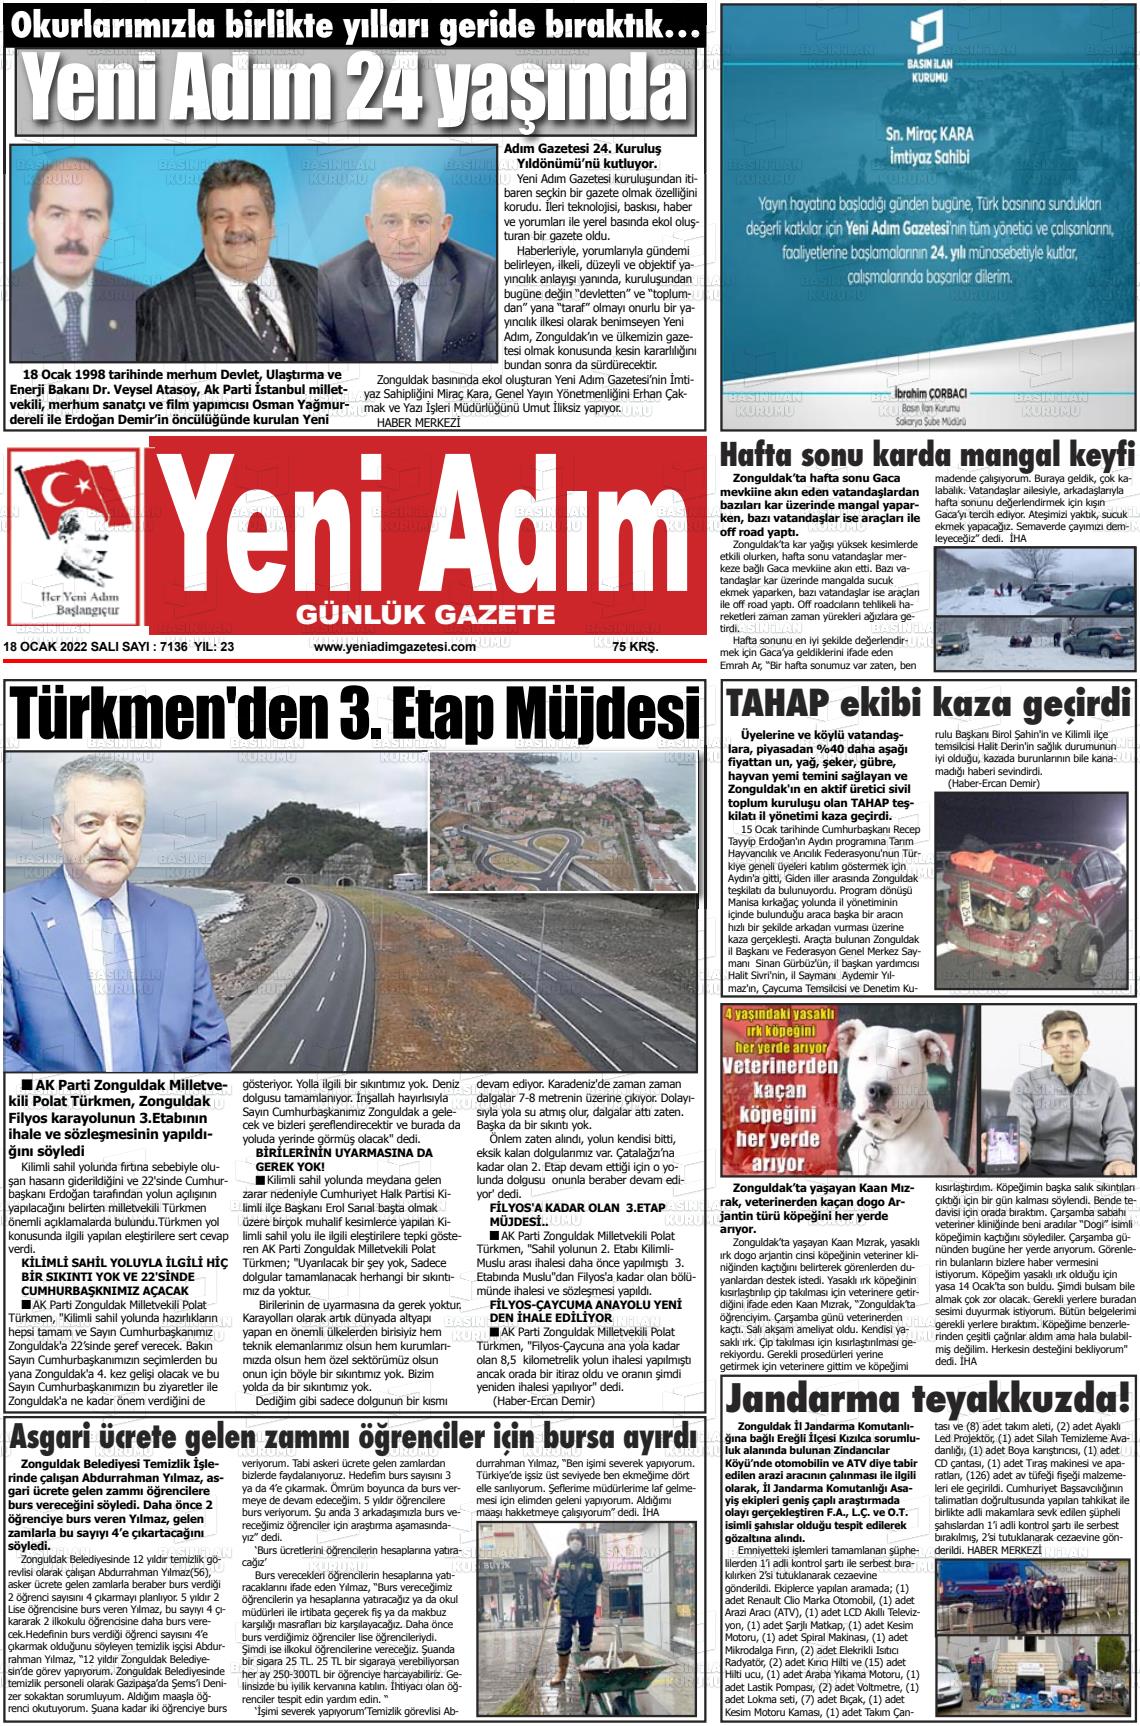 18 Ocak 2022 Yeni Adım Gazete Manşeti